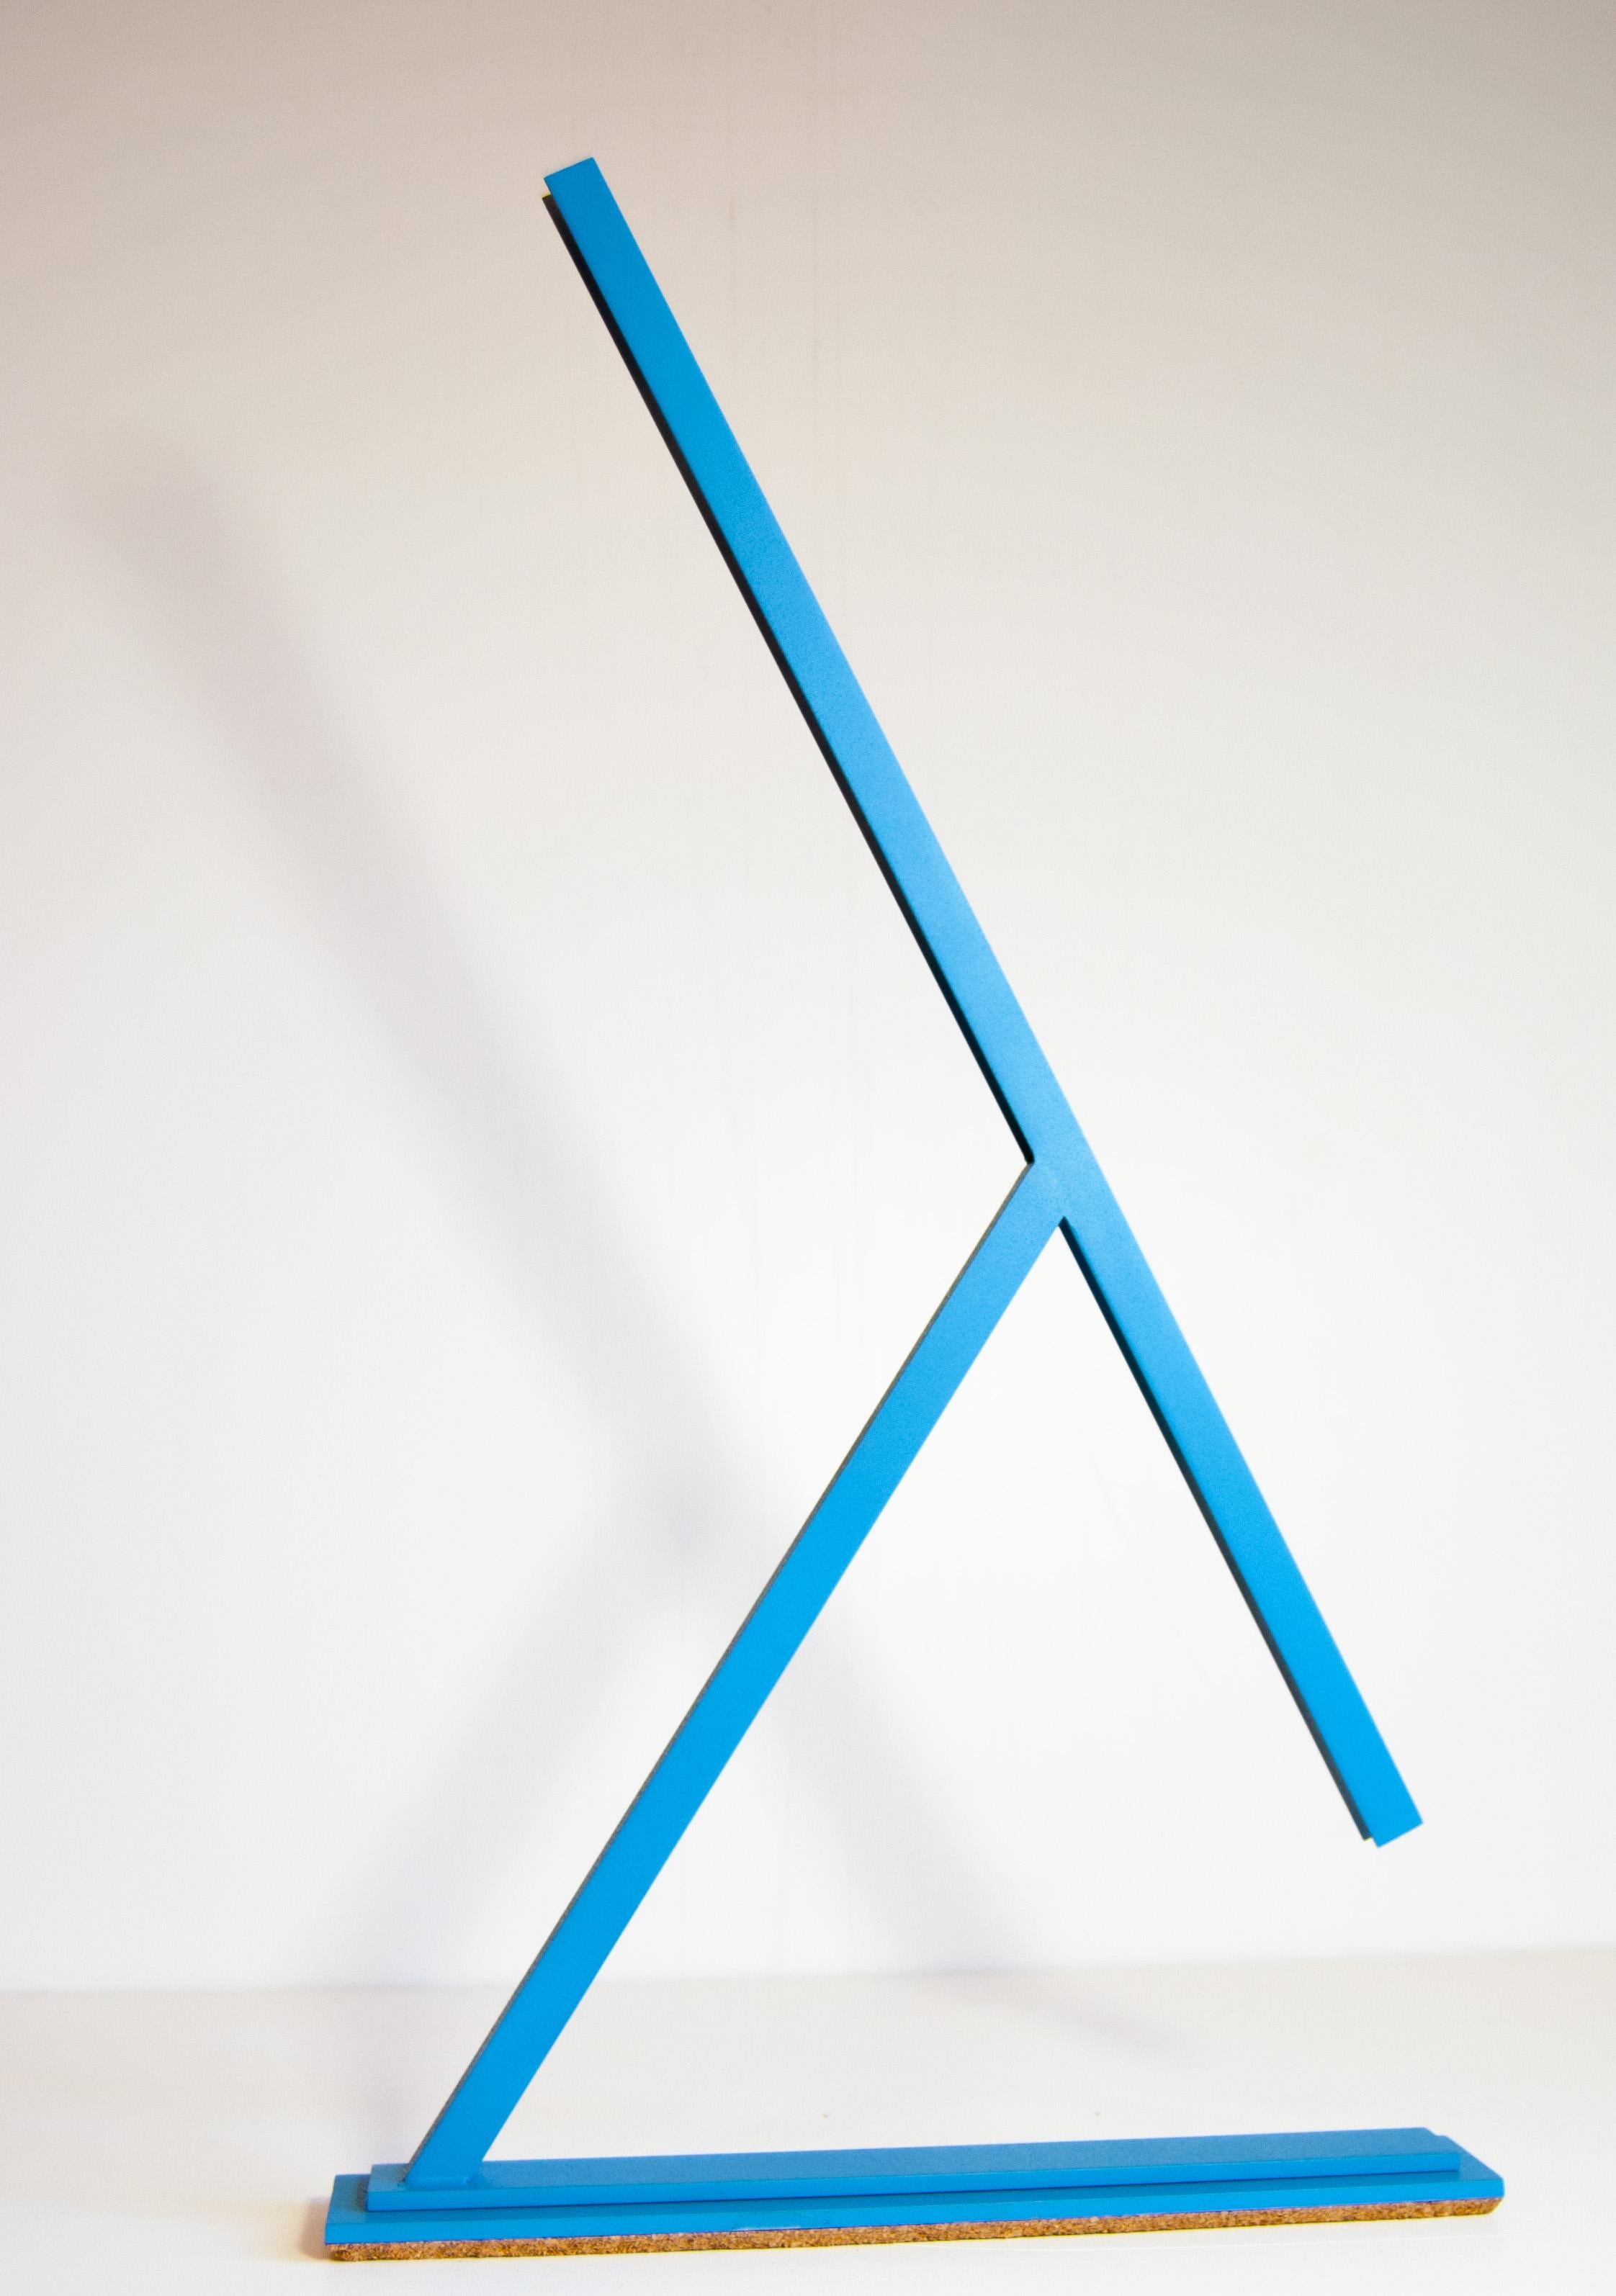 Achille ist eine von Tommaso Cristofaro entworfene Tischleuchte, die nur auf Bestellung und in einem hochgradig handwerklichen Verfahren hergestellt wird.
Für die Konstruktion werden Materialien wie 1,5 mm dickes Aluminium verwendet, das nach einer